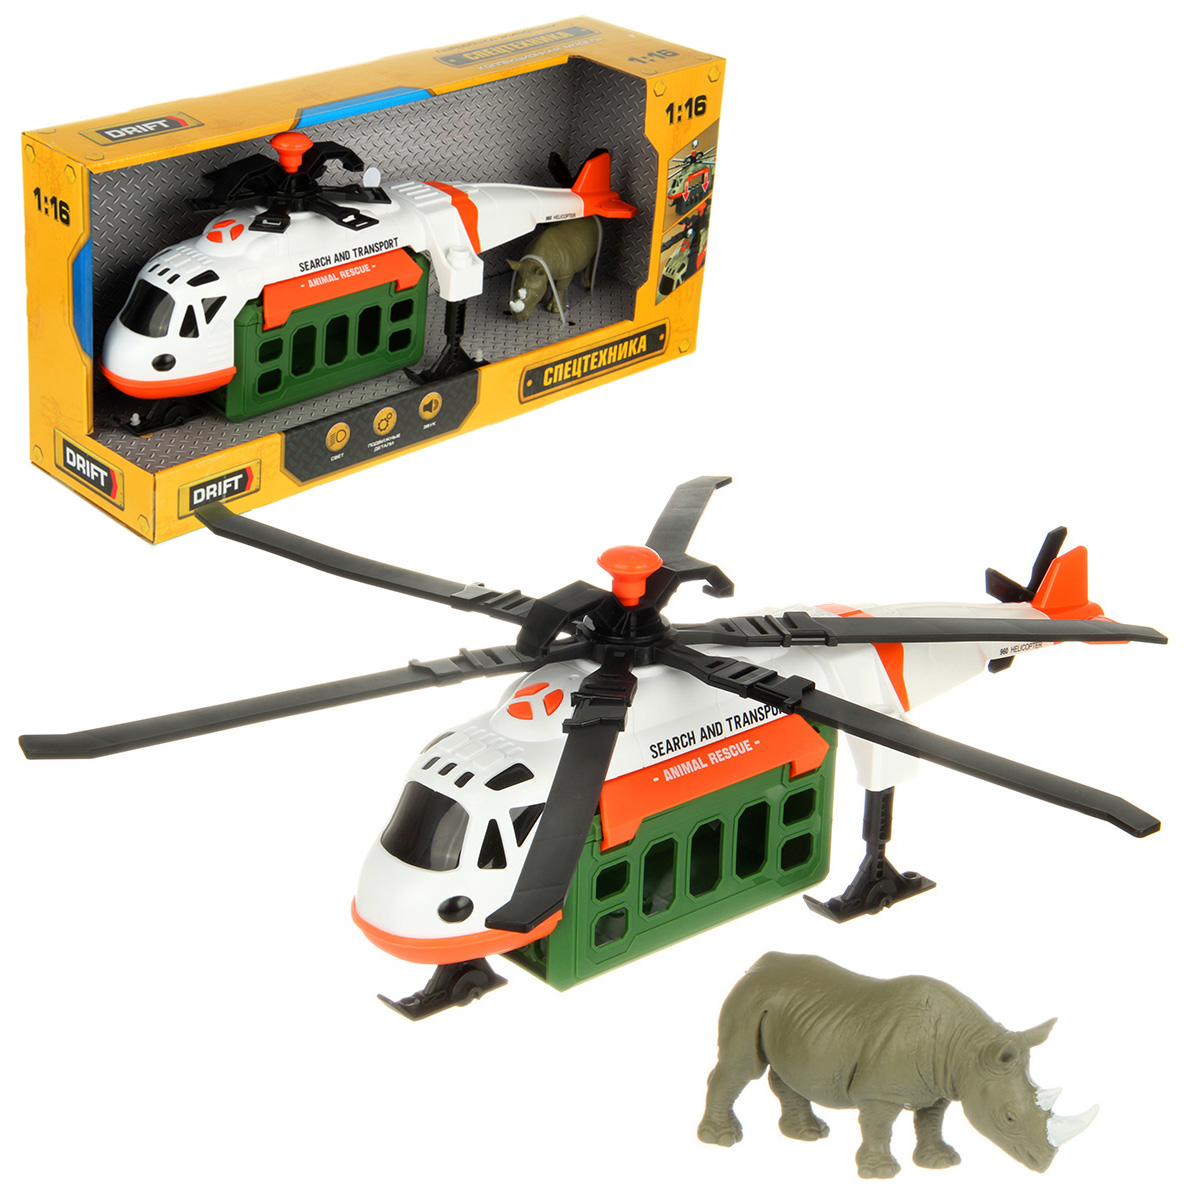 Вертолет игрушечный Drift Перевозка животных 1:16 белый 130979 держатели верхних лопастей для вертолета syma s033